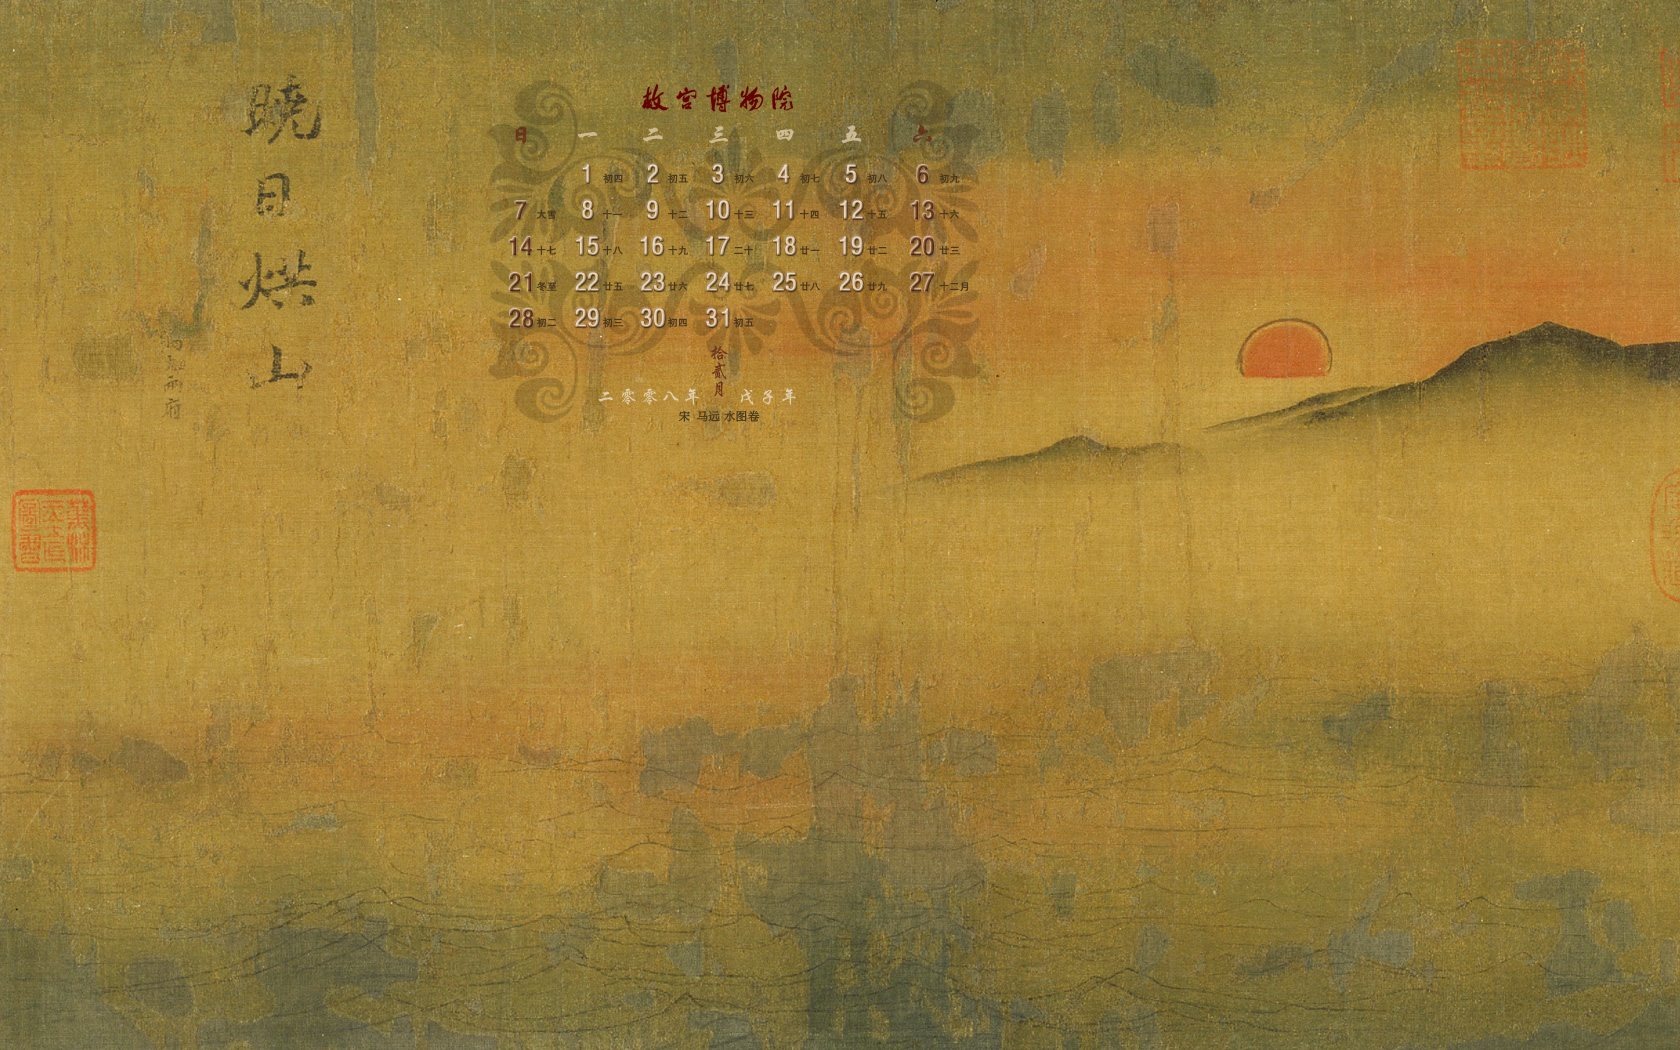 北京故宫博物院 文物展壁纸(二)27 - 1680x1050